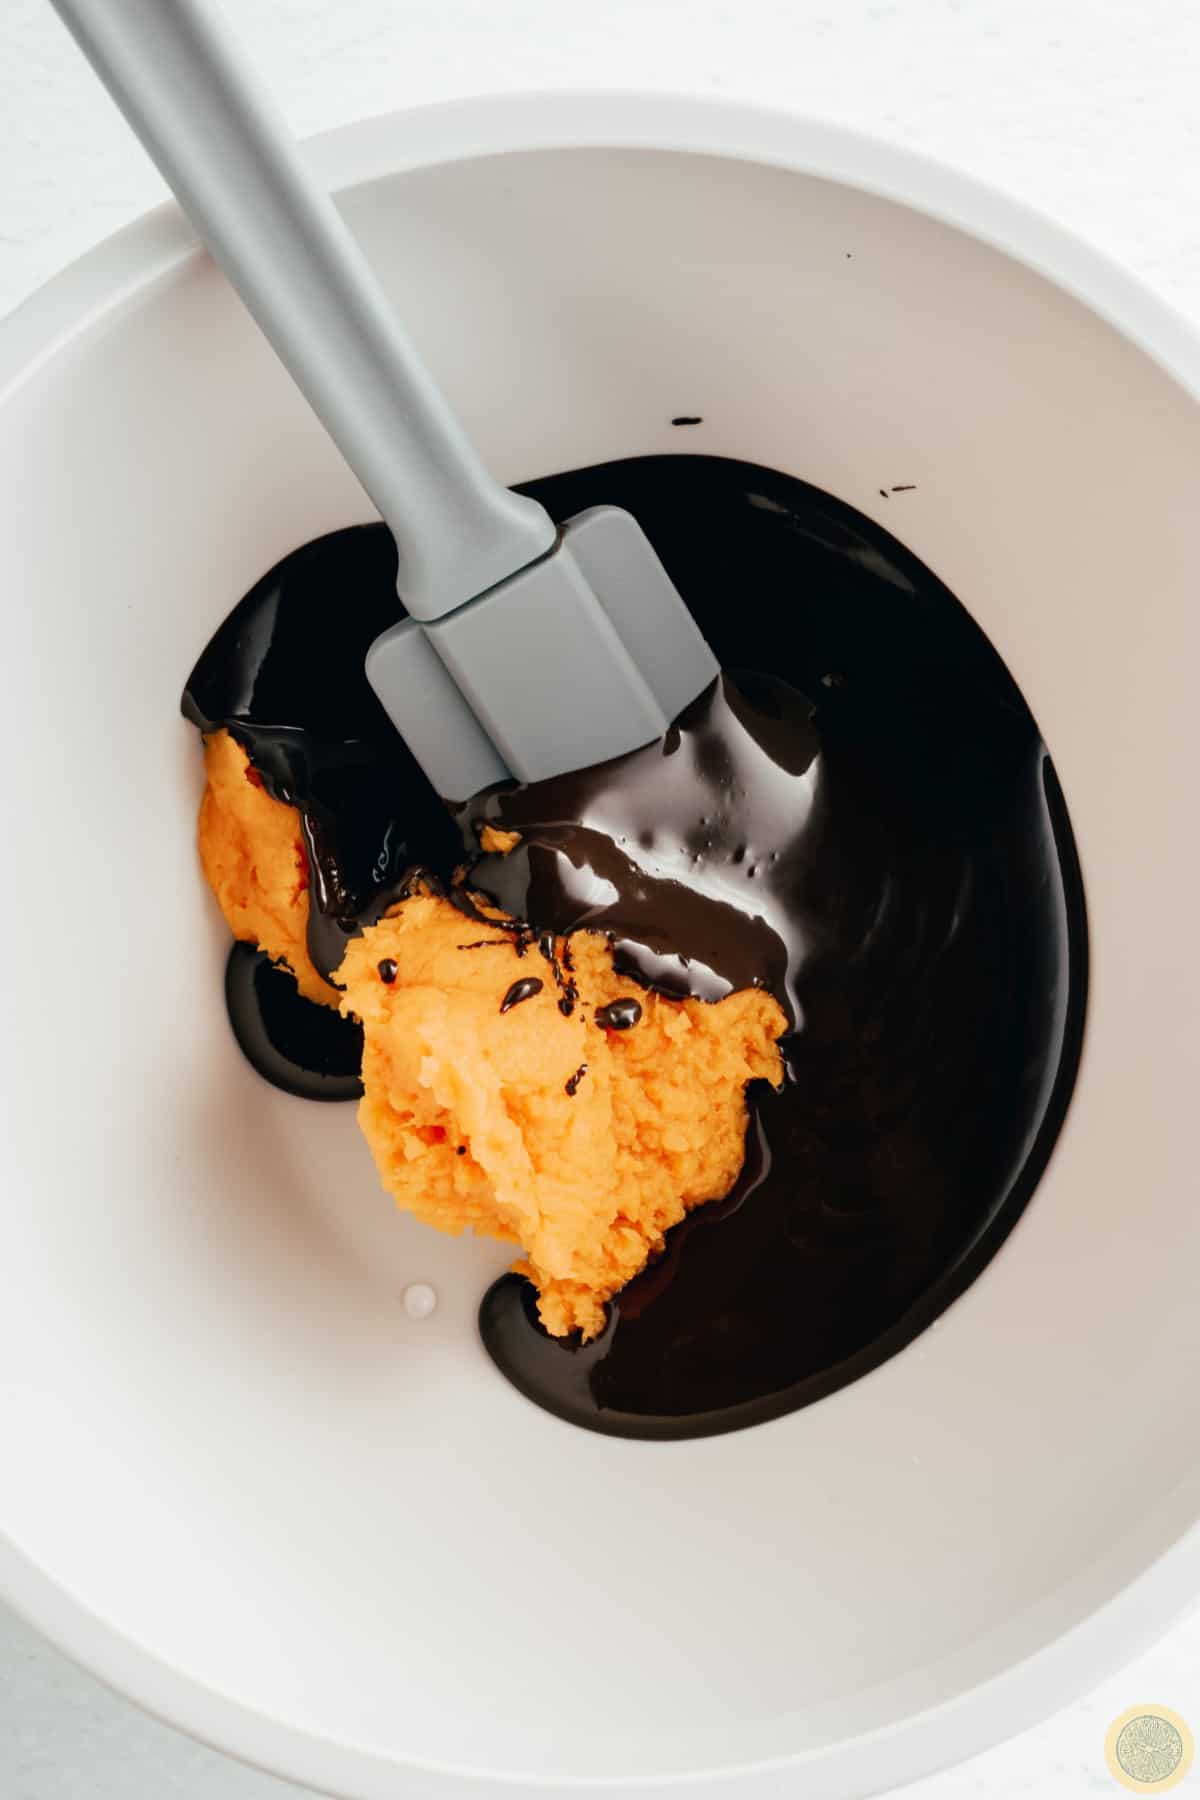 How to Make Sweet Potato Chocolate Fudge